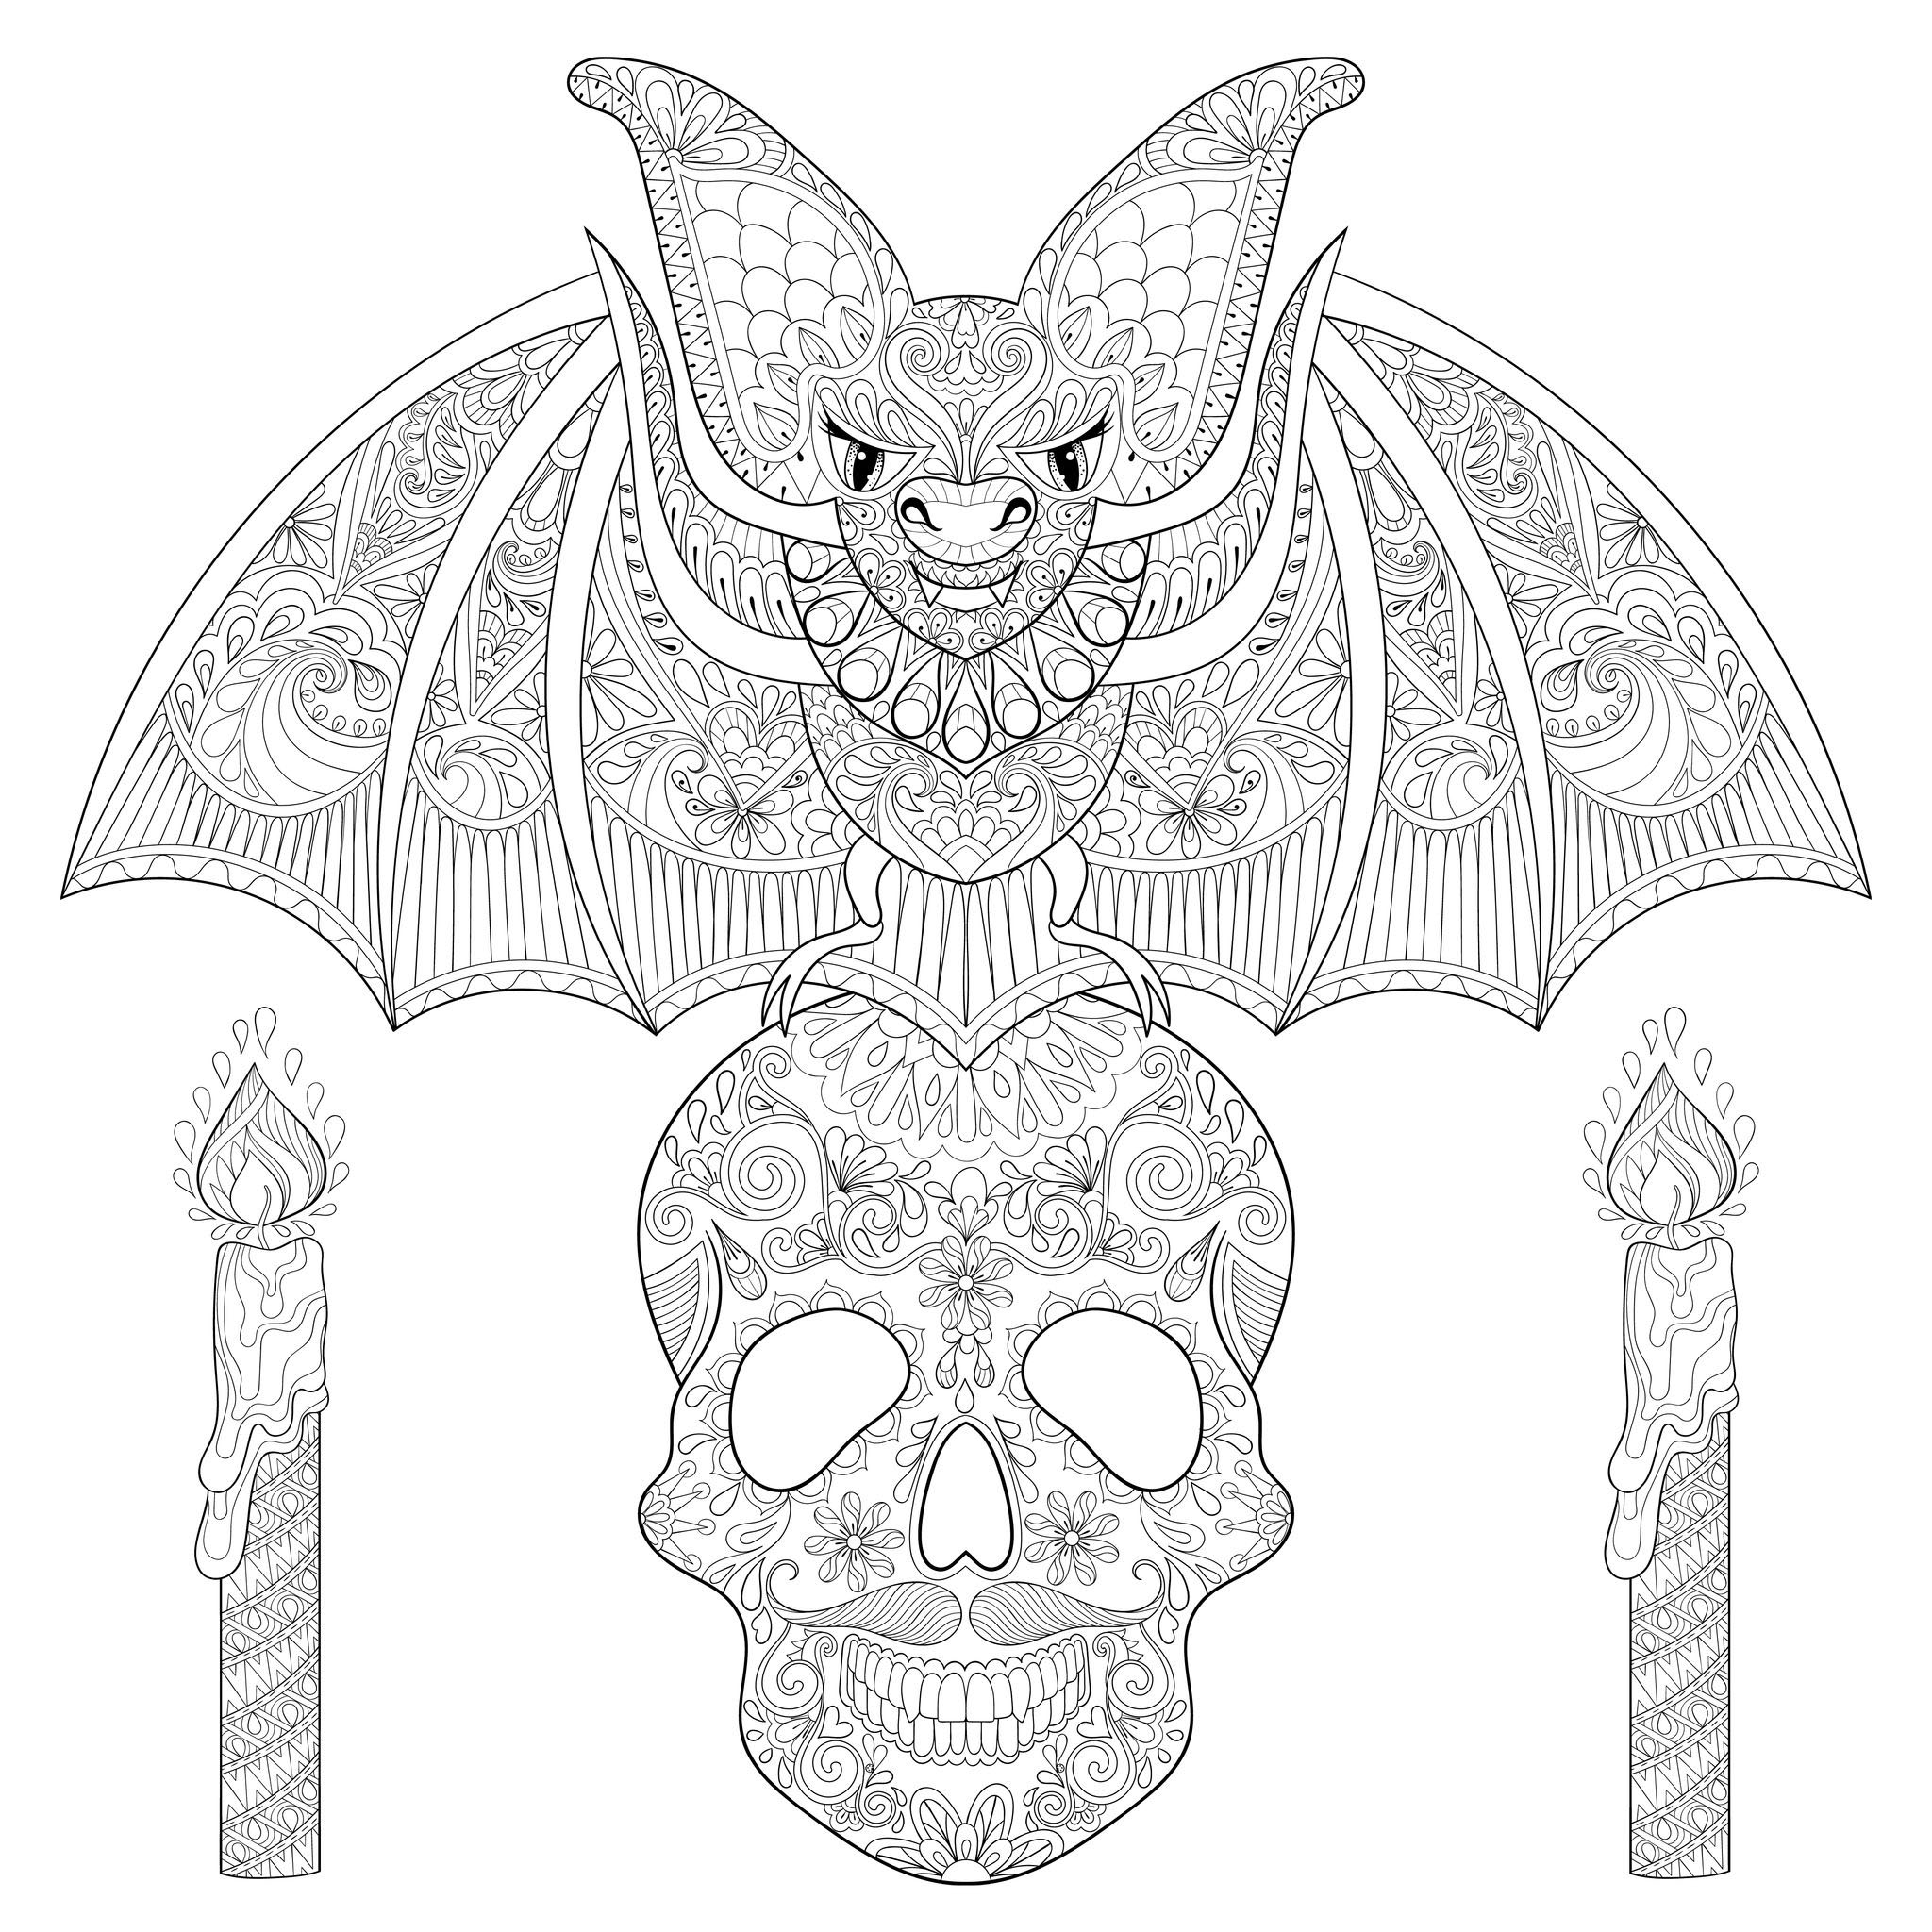 Bonito morcego numa caveira de esqueleto, com velas. Cada elemento está repleto de padrões maléficos.